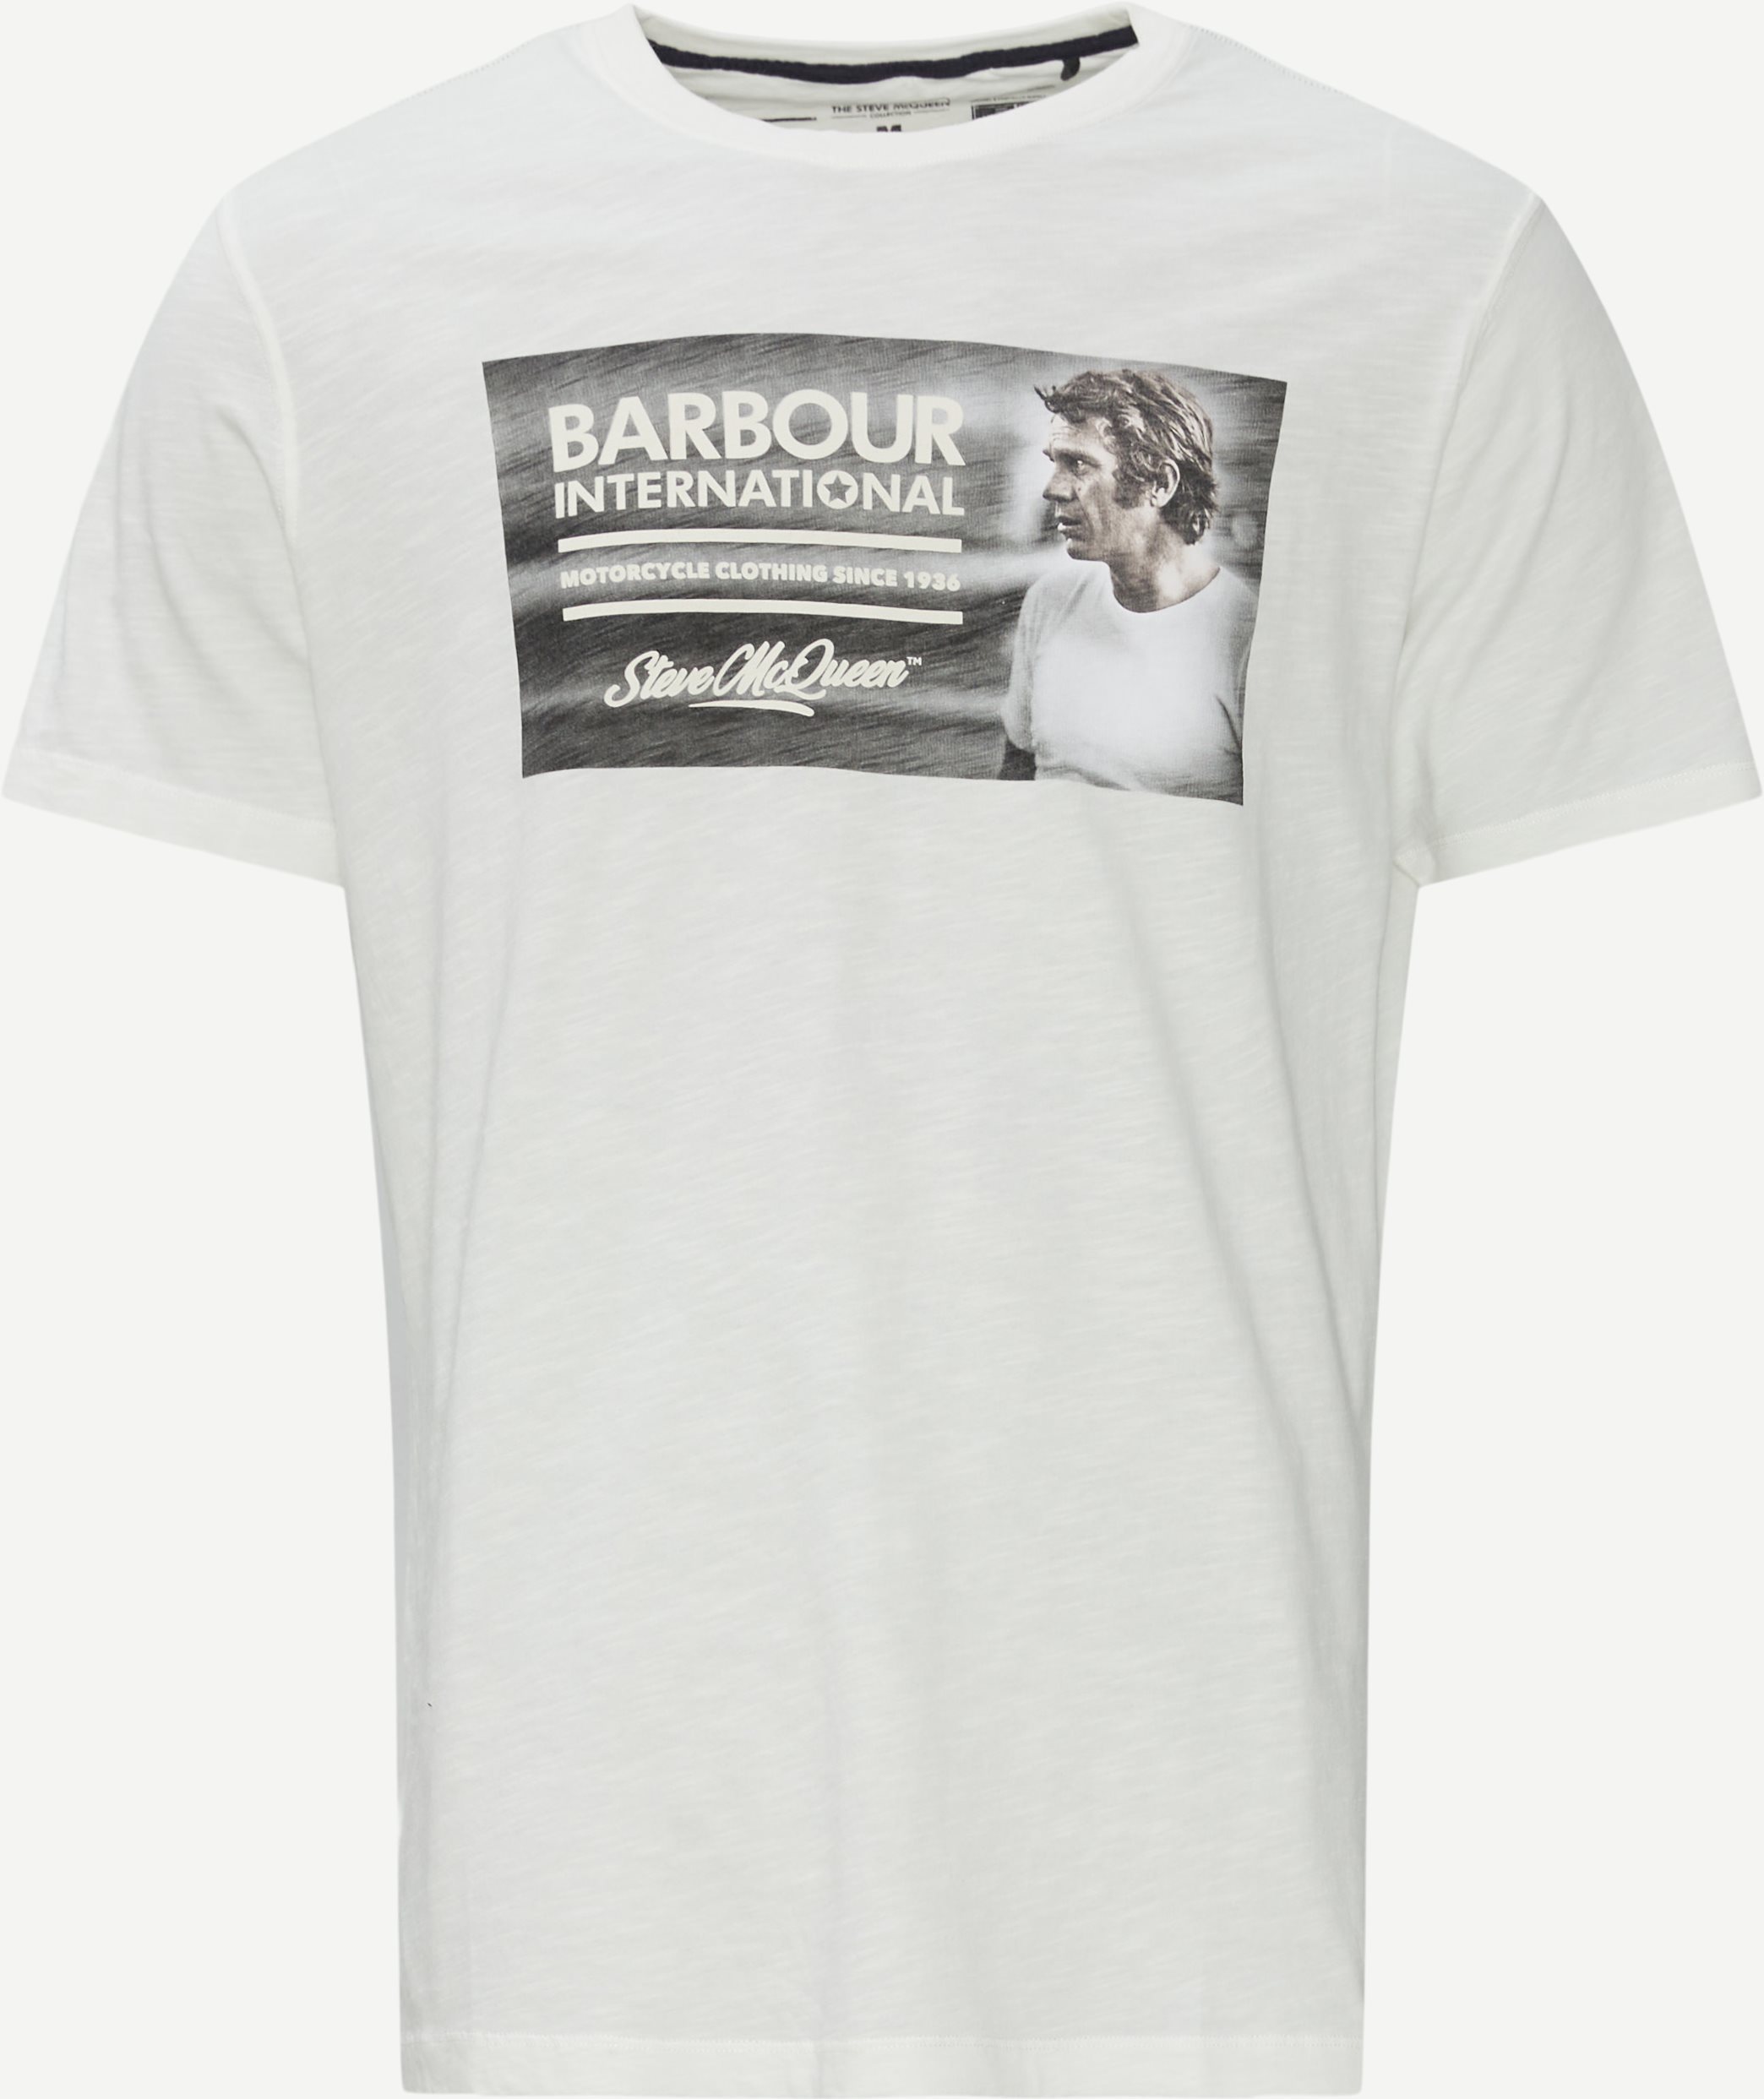 Steve McQueen Legend T-shirt - T-shirts - Regular fit - White